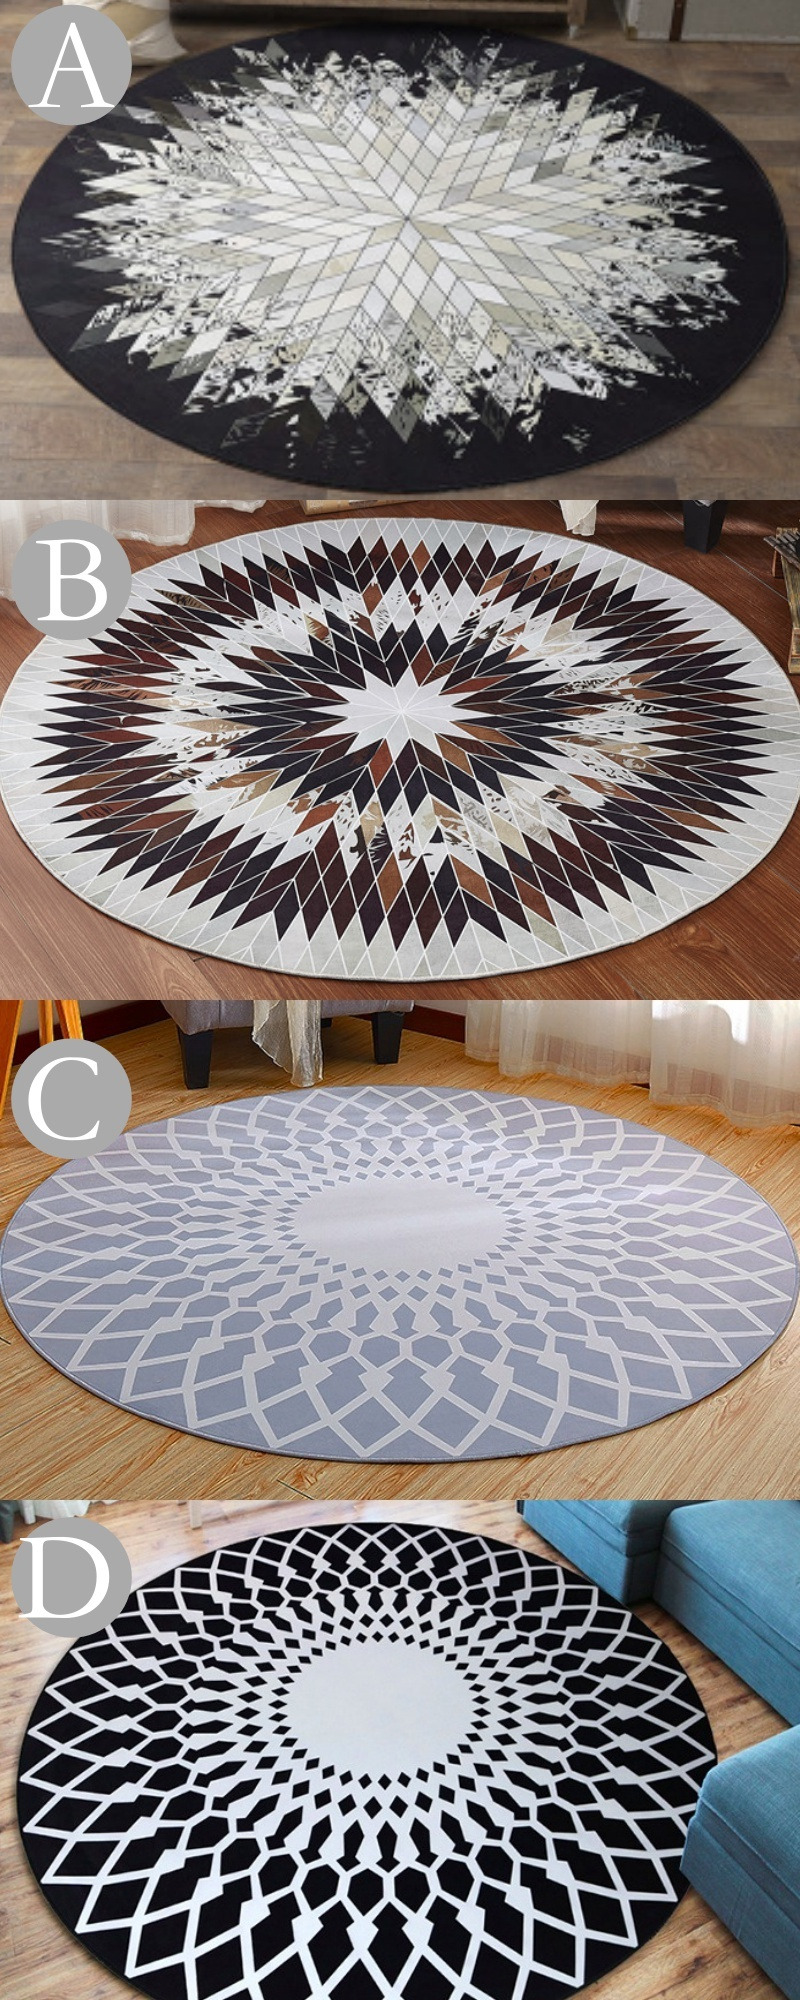 北歐風圓形地毯